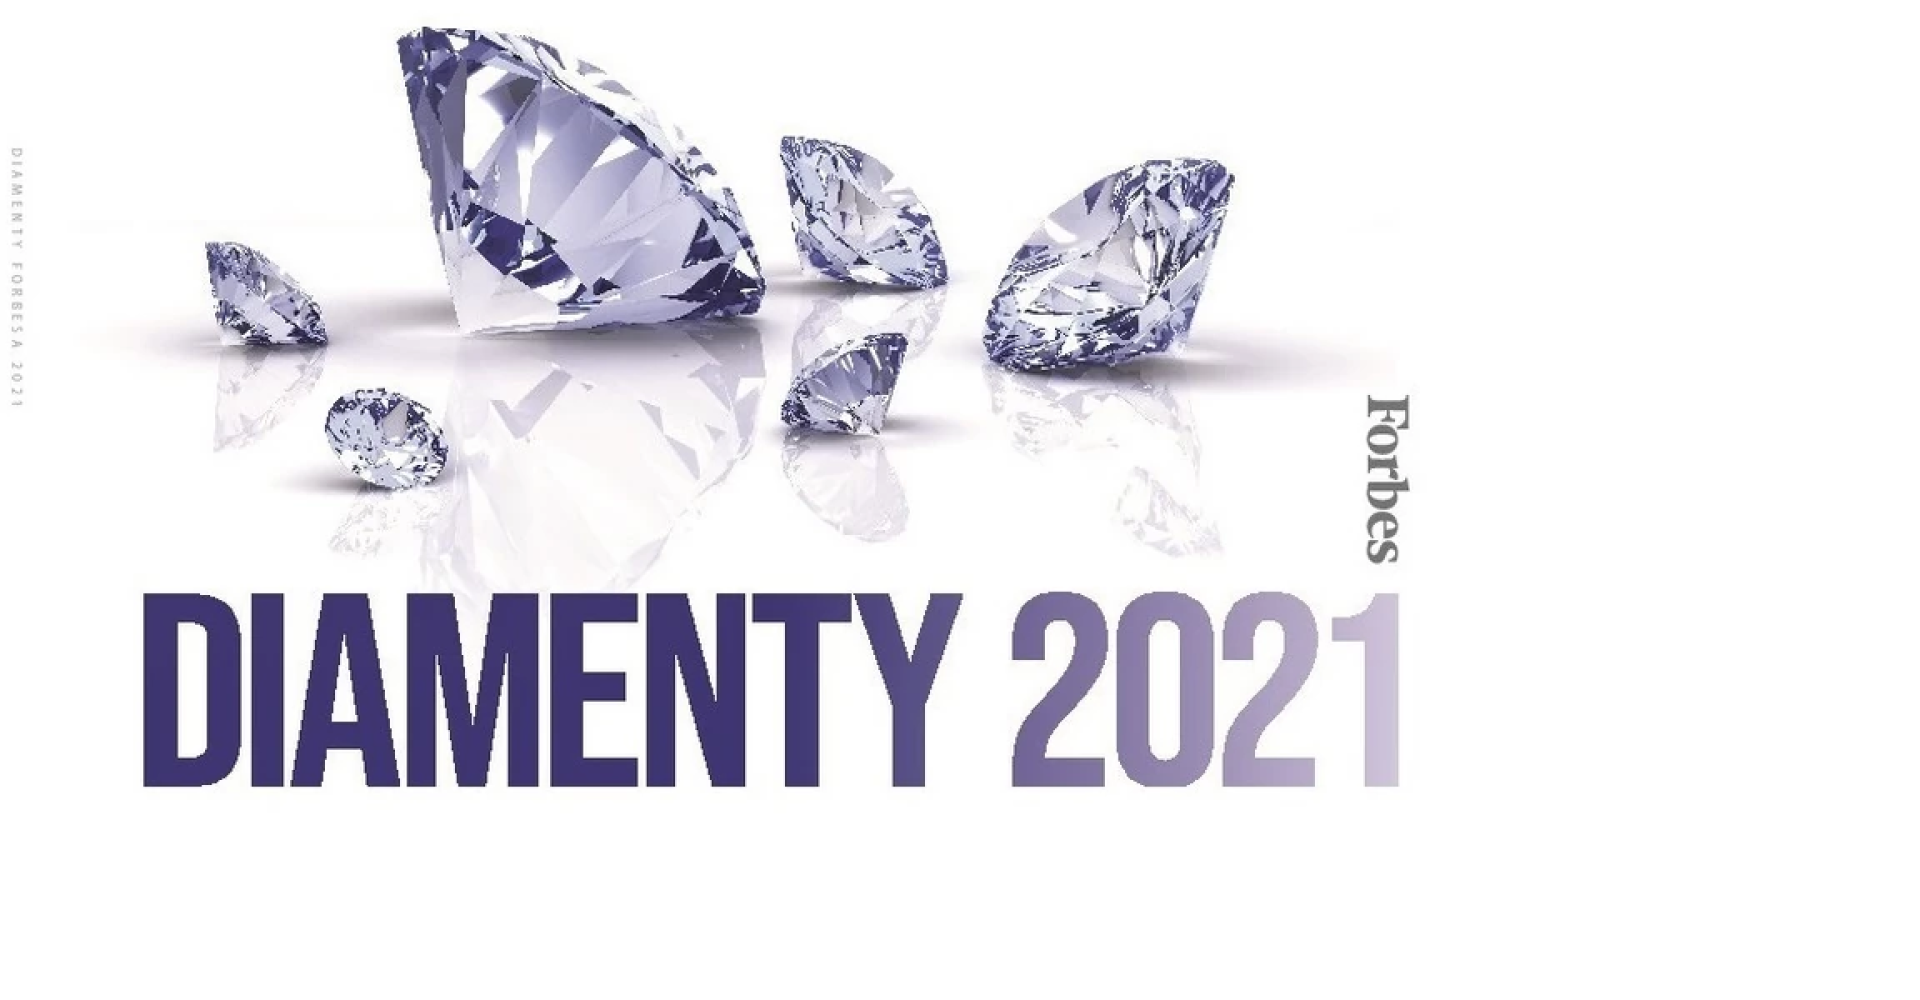 Promobil Fleet Sp. z o.o. w zestawieniu najszybciej rozwijających się firm miesięcznika Forbes z tytułem Diamentu 2021